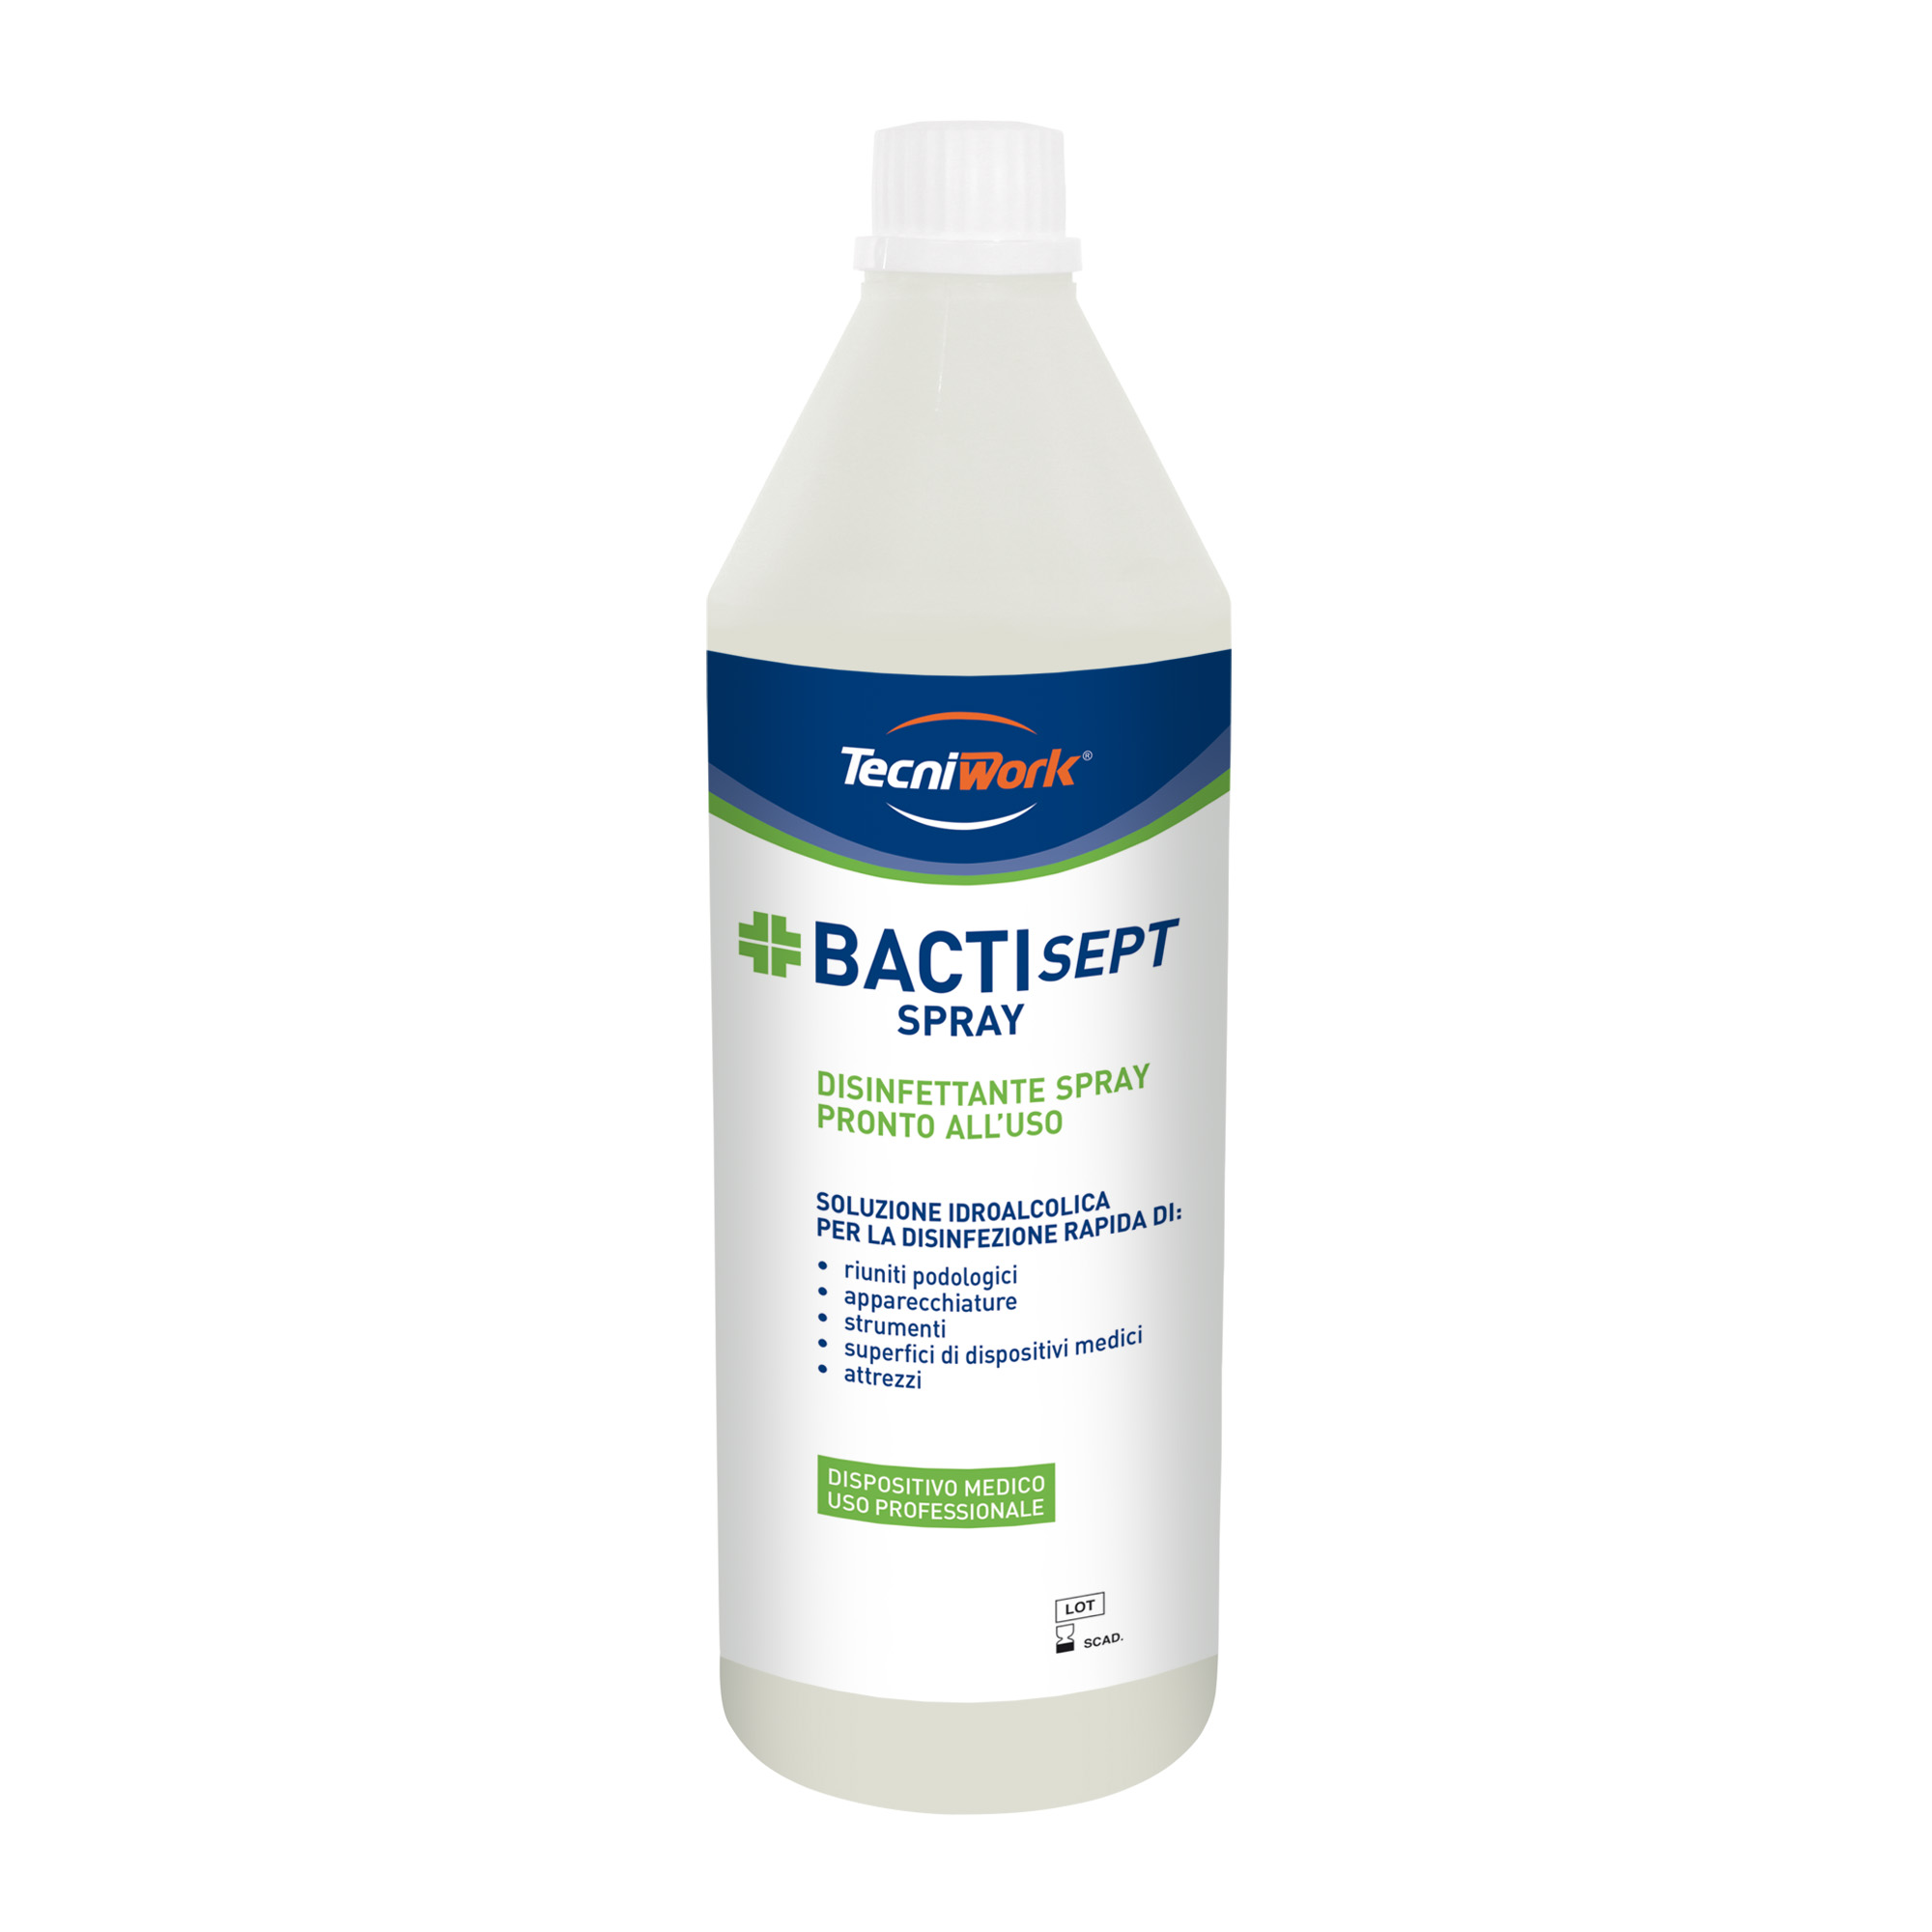 Désinfectant pour surfaces et équipements avec un taux d'alcool de 70° Bactisept Spray 1 l